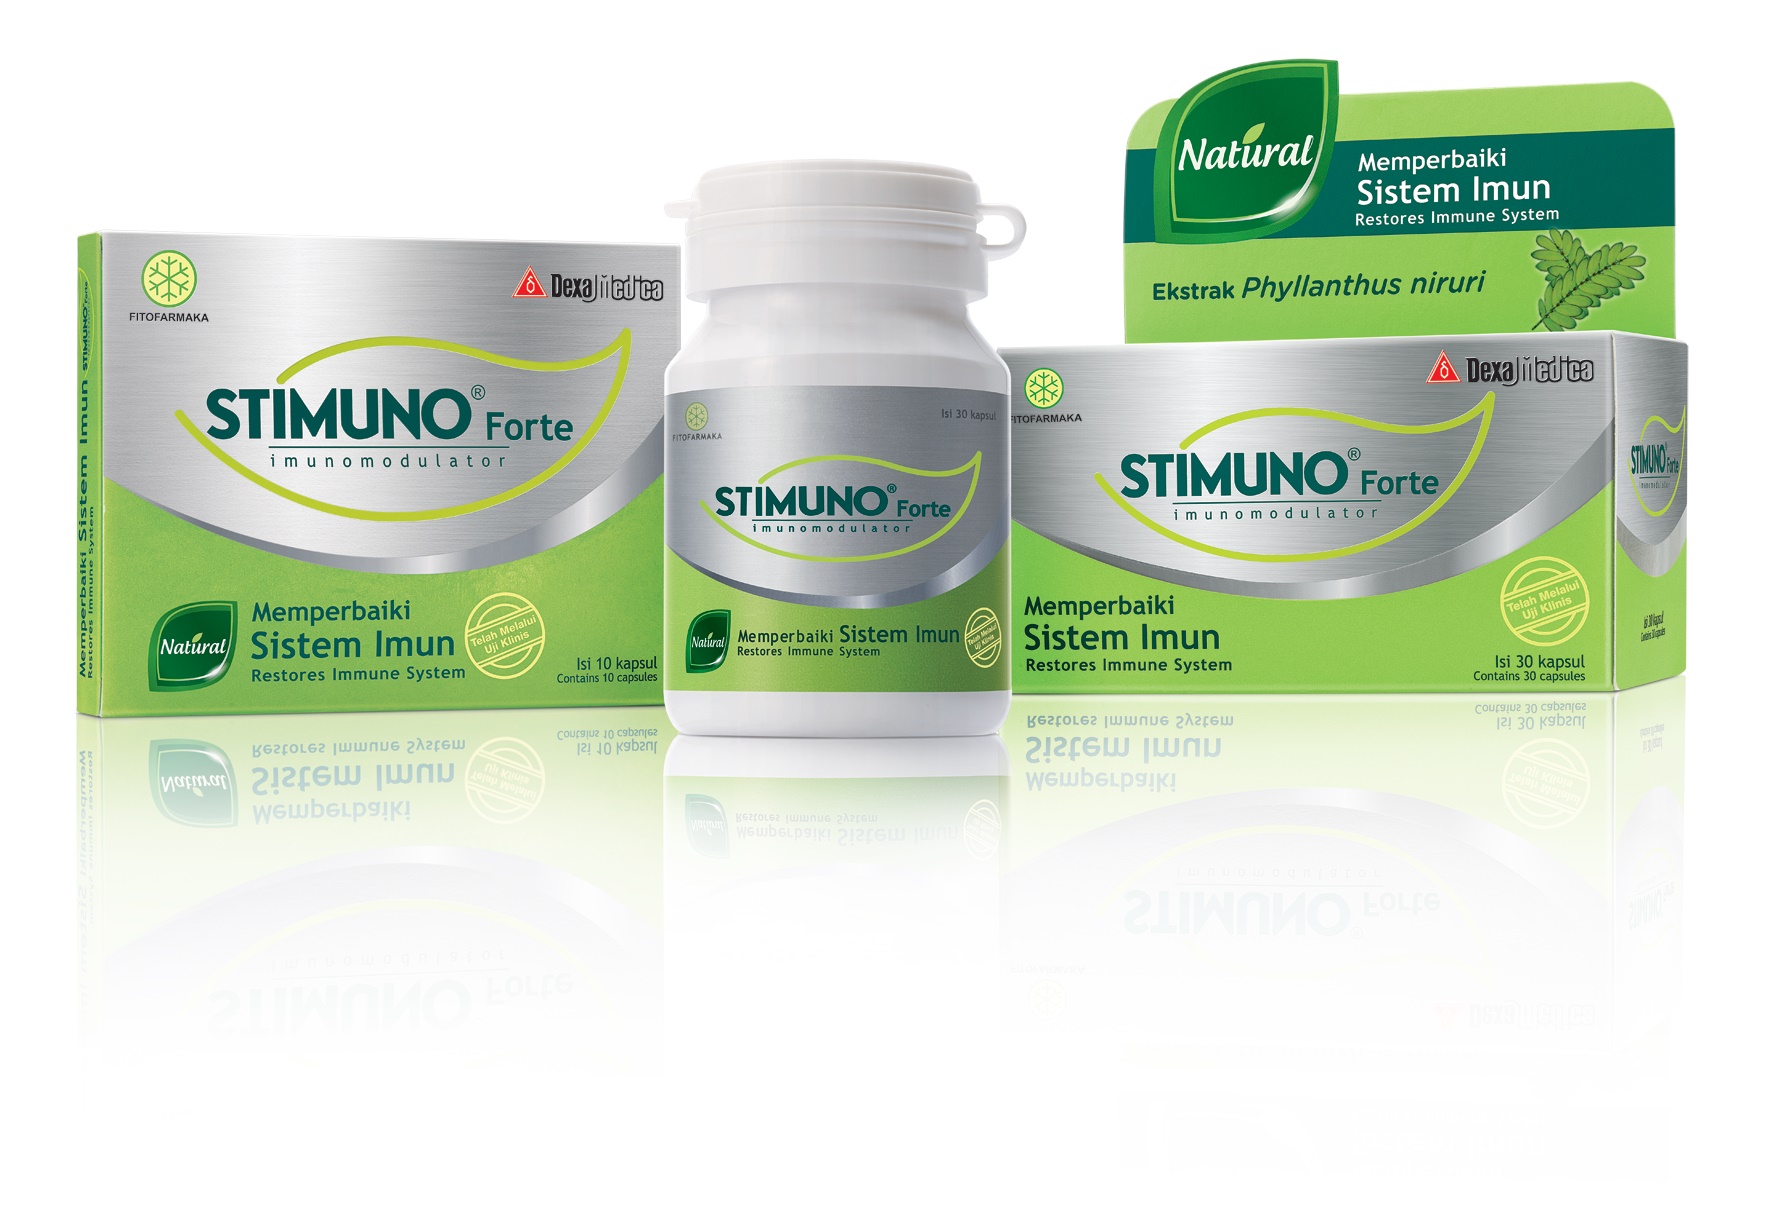 Mengapa Pilih STIMUNO Forte untuk Jaga Kesehatan Keluarga?